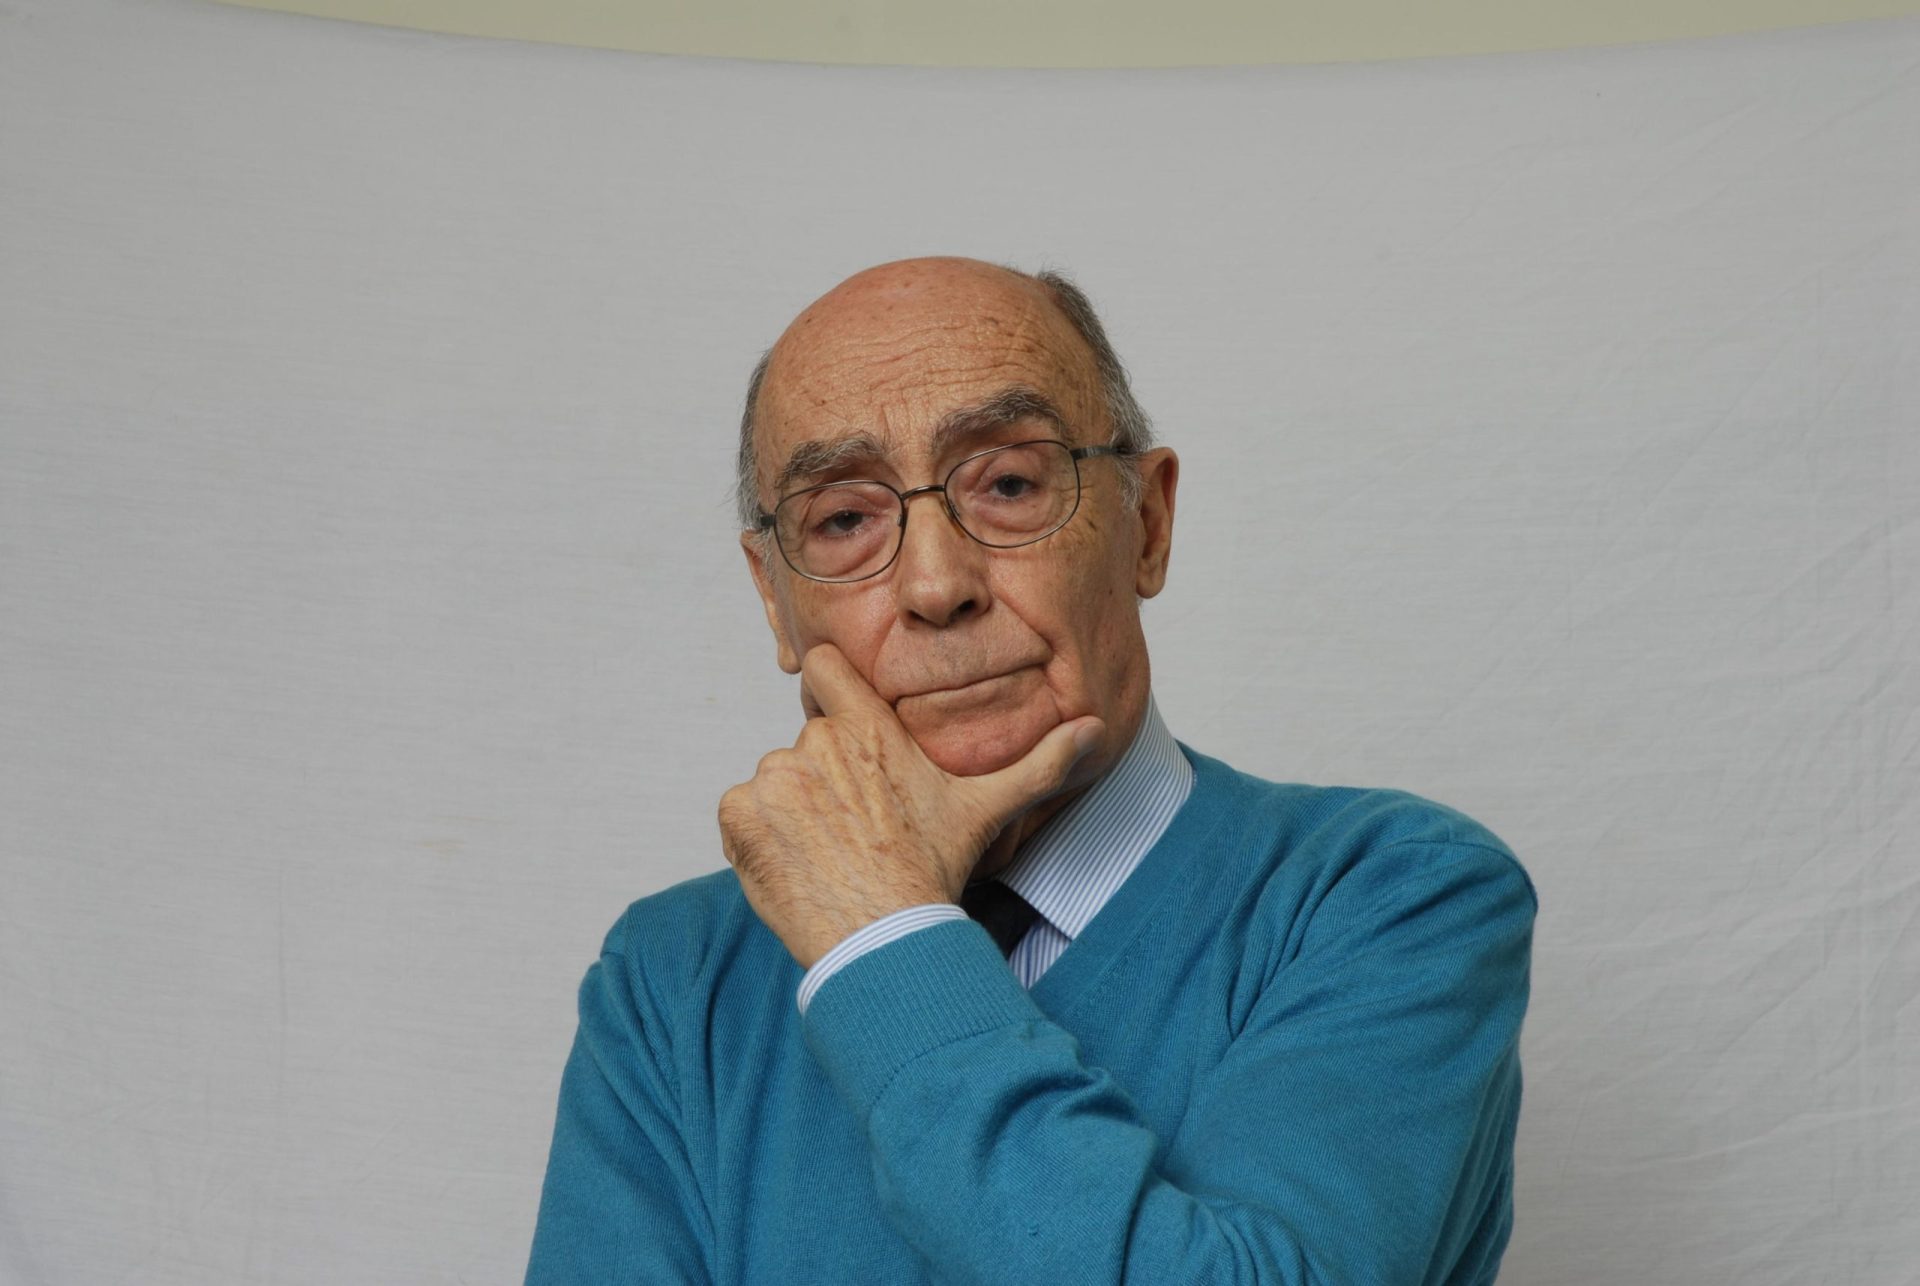 Pedro Sánchez destaca Saramago “como uma referência” universal